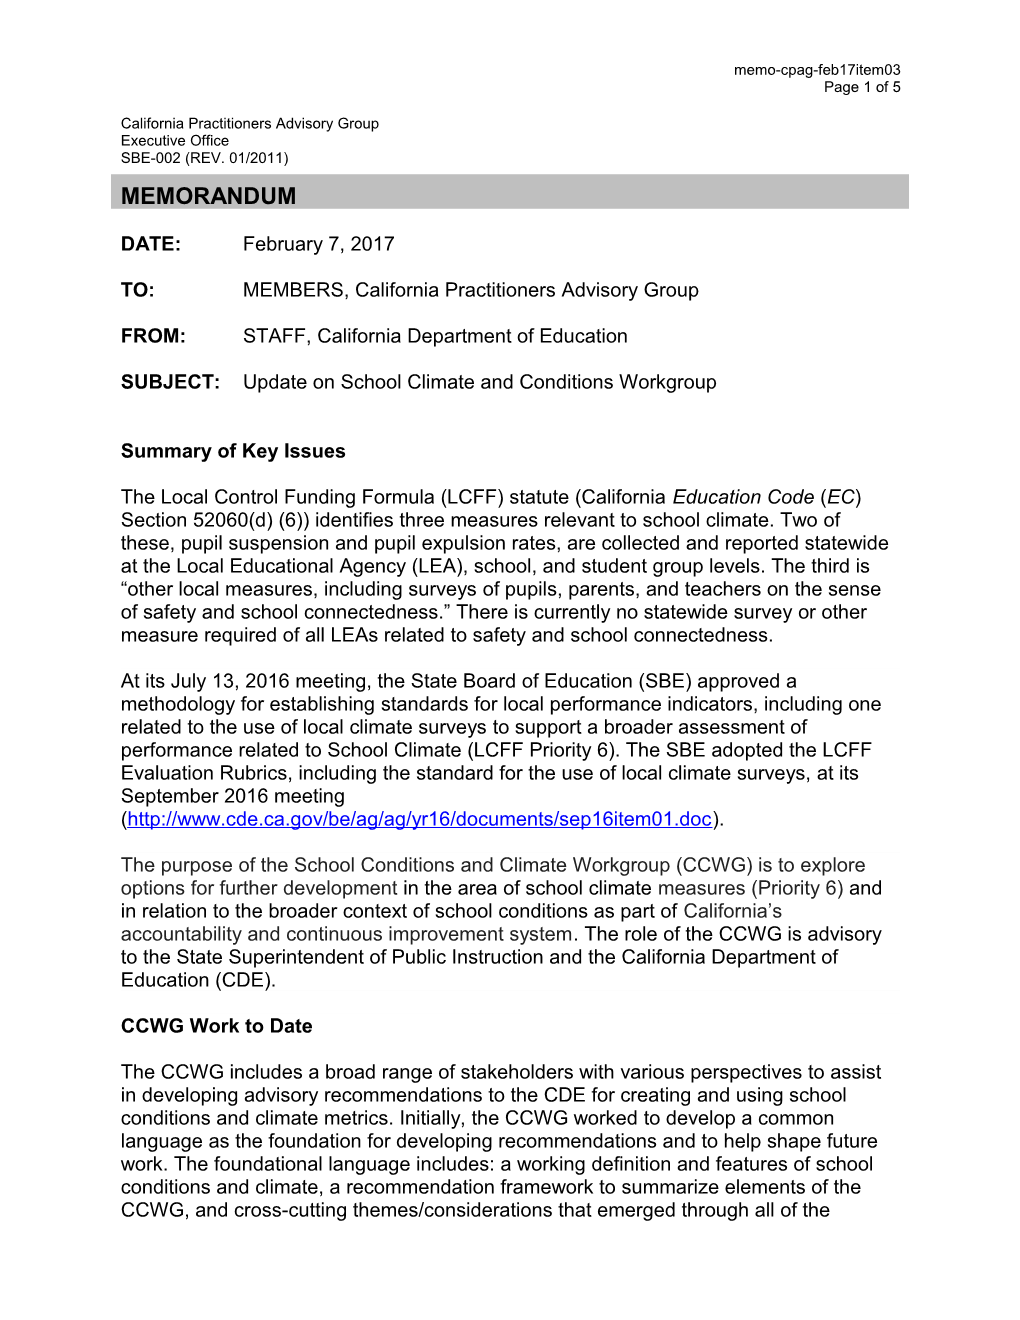 February 2017 Memorandum CPAG Item 03 - Information Memorandum (CA State Board of Education)